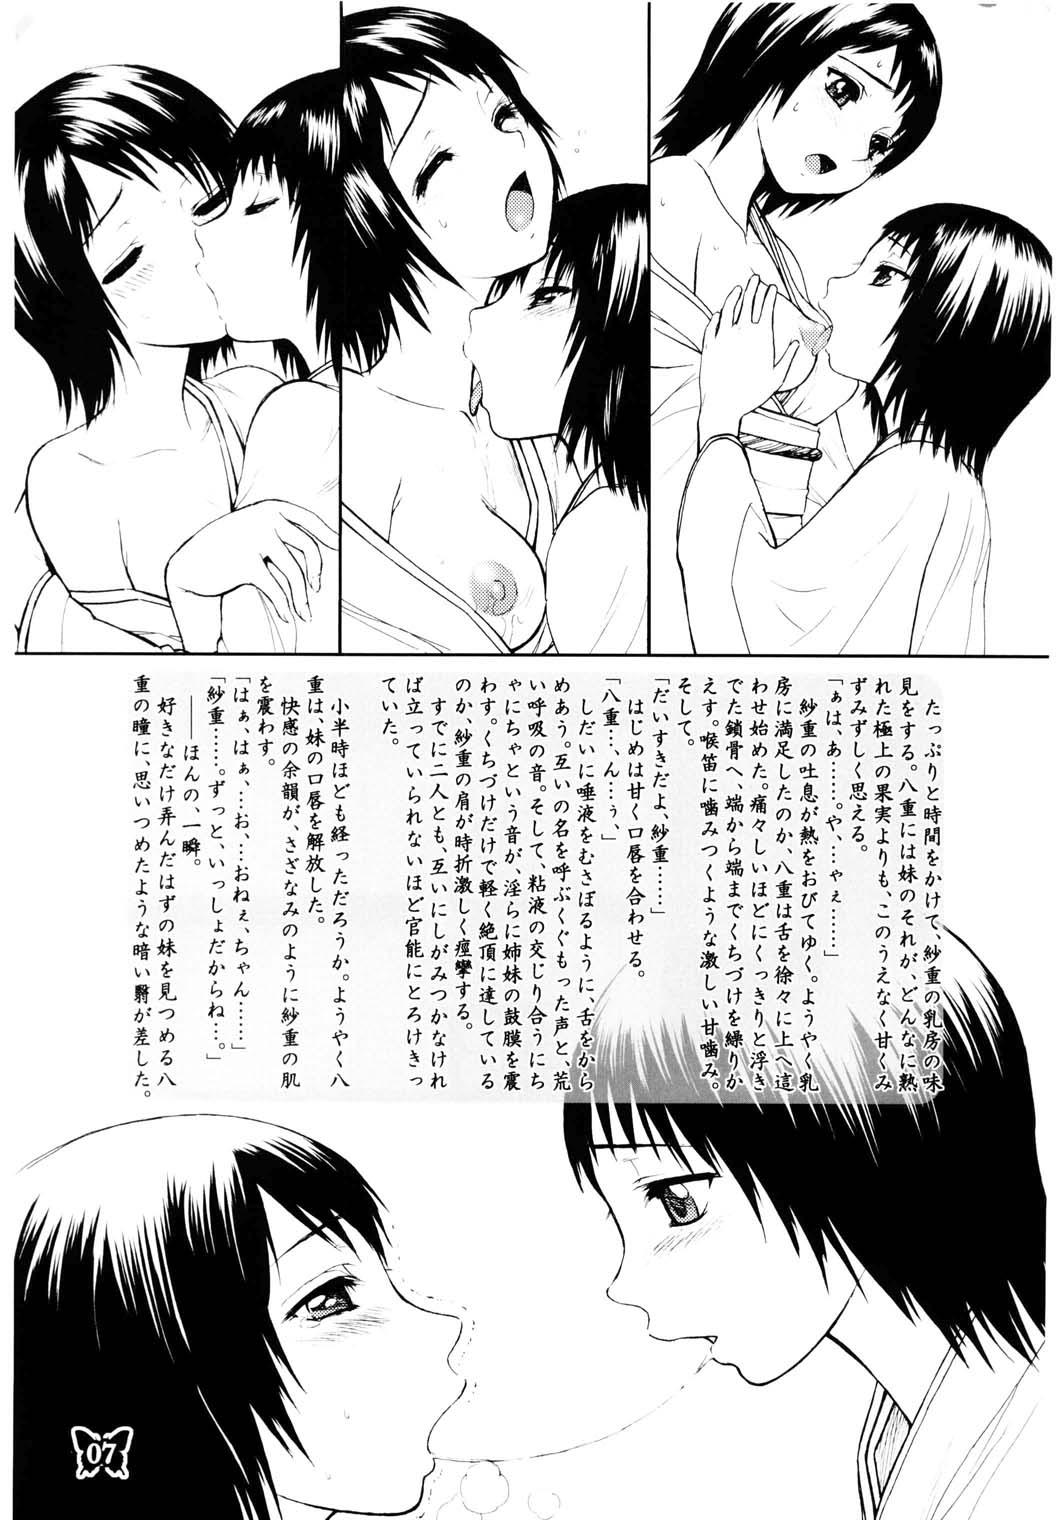 18yo Furanki - Fatal frame Gorgeous - Page 7